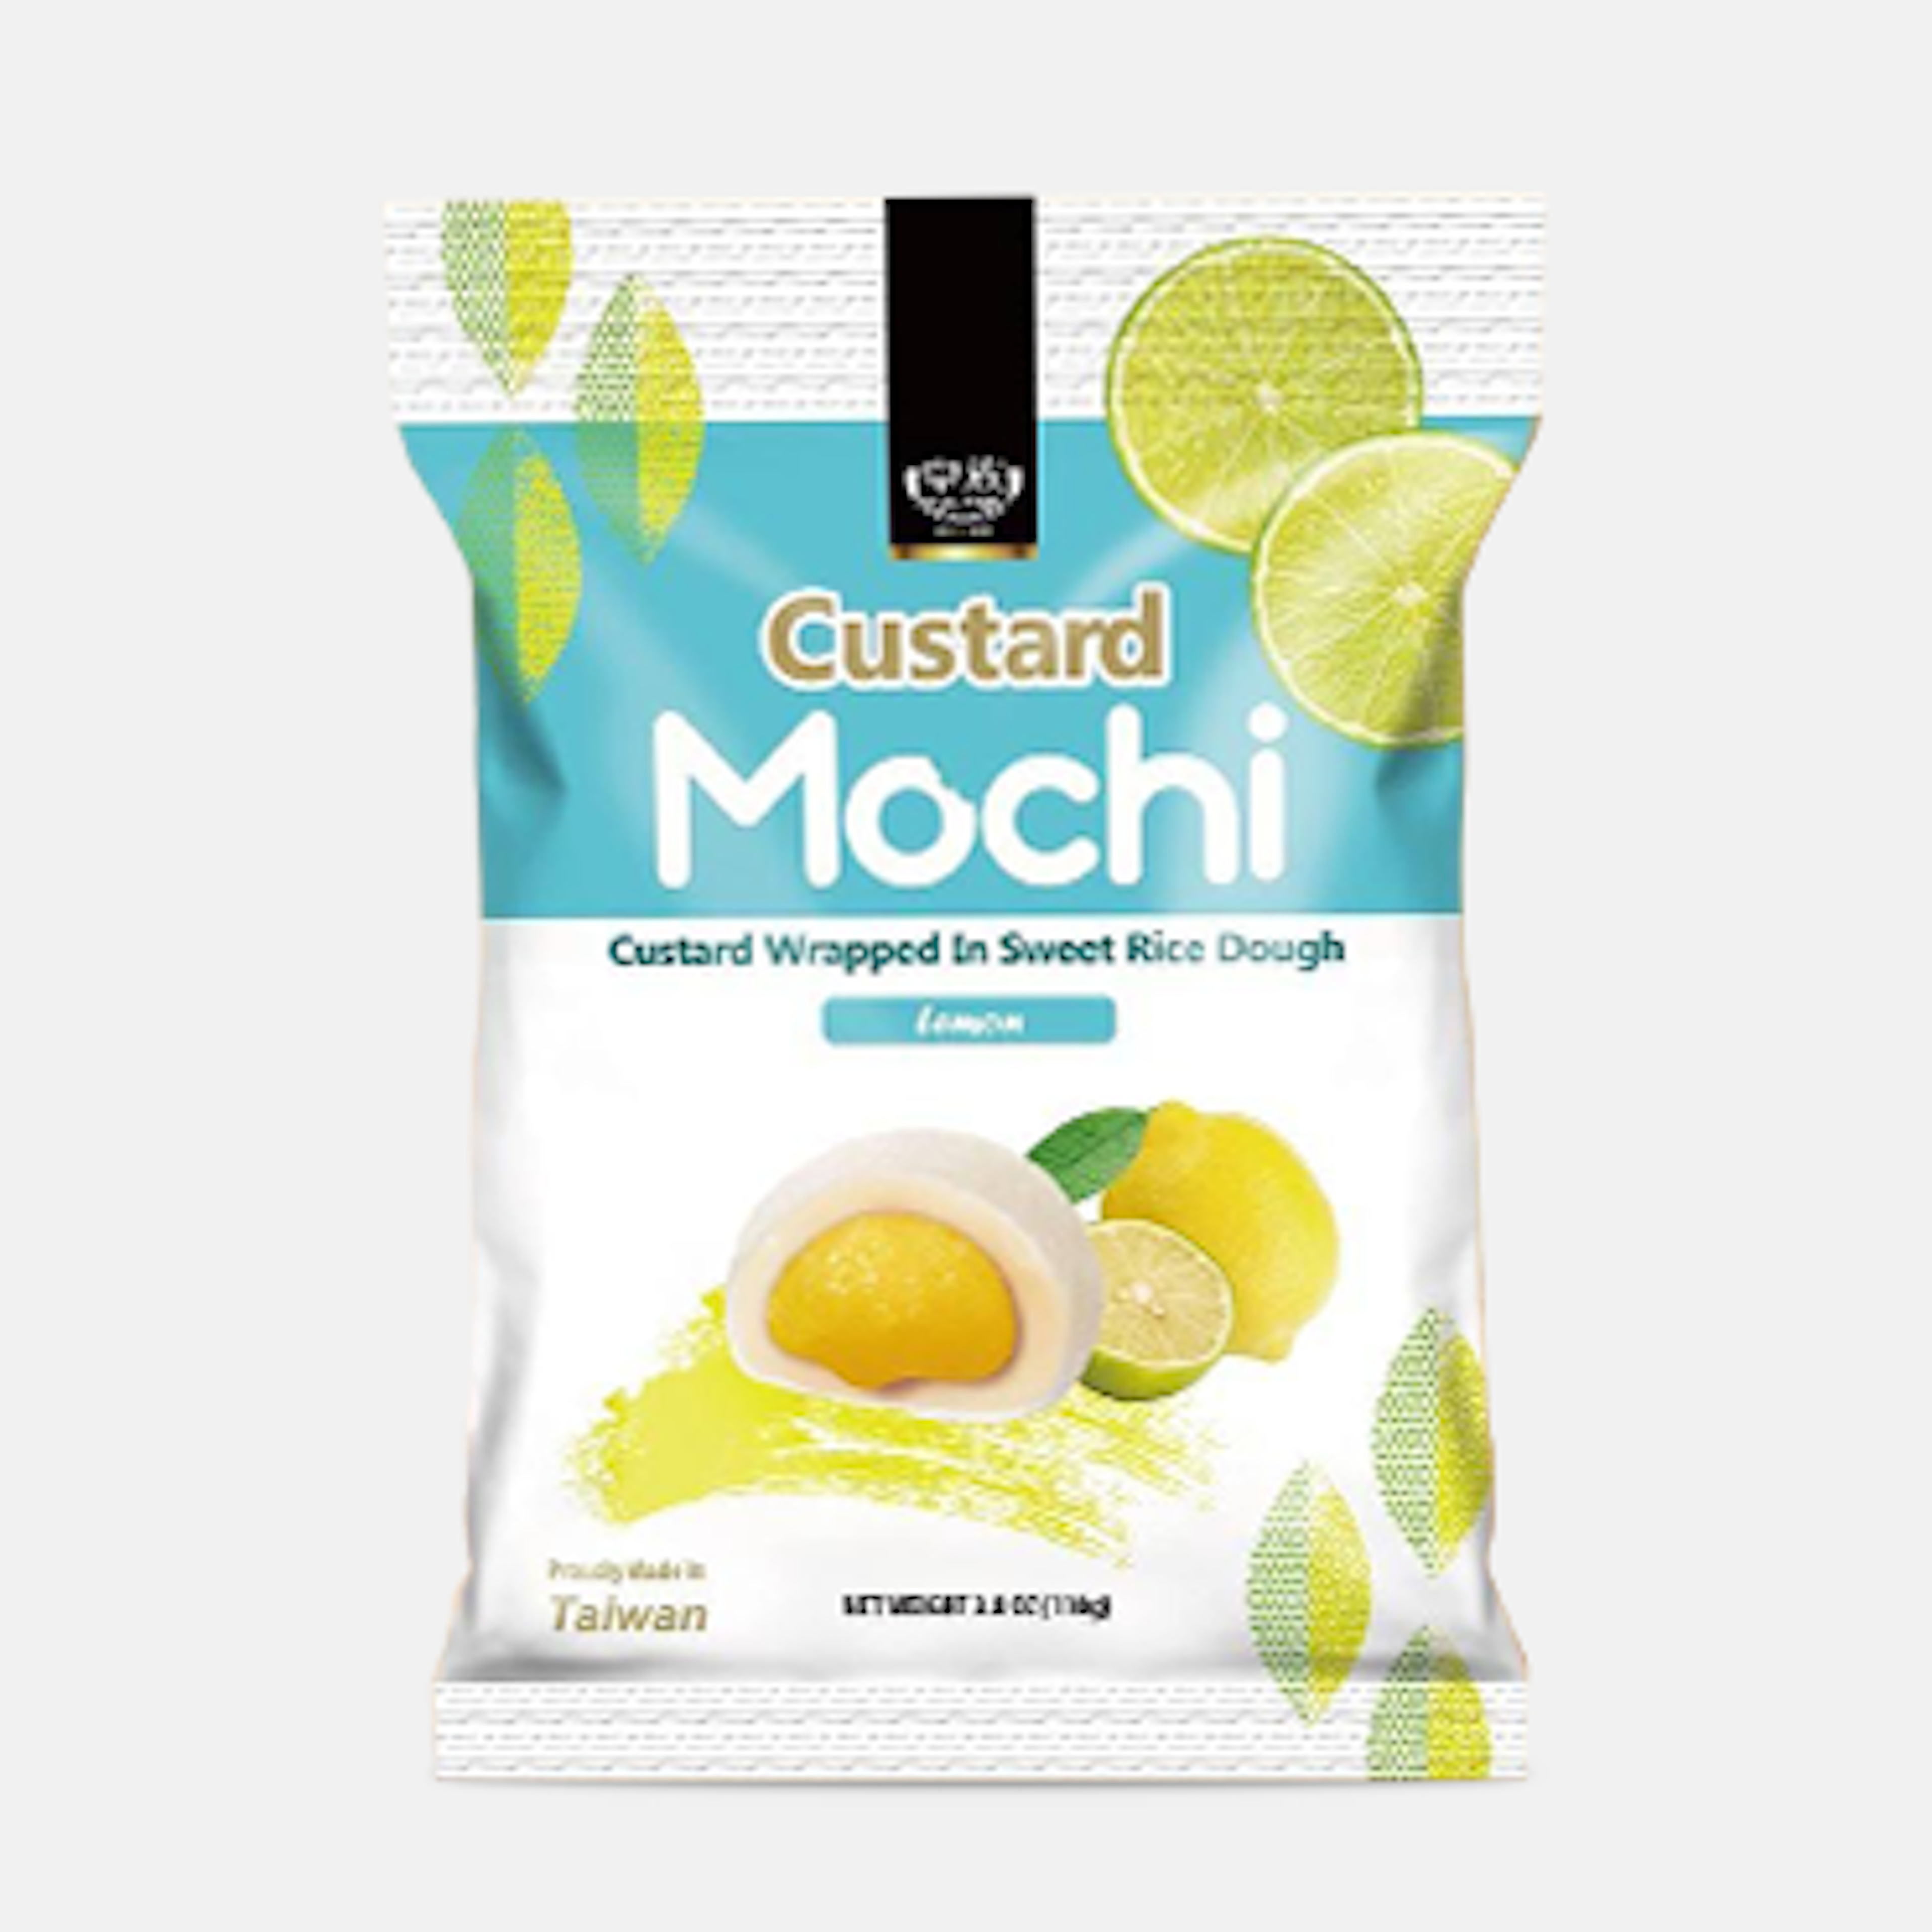 Royal Family Custard Mochi Lemon 110g - Ideal für unterwegs oder als süßer Snack zwischendurch.